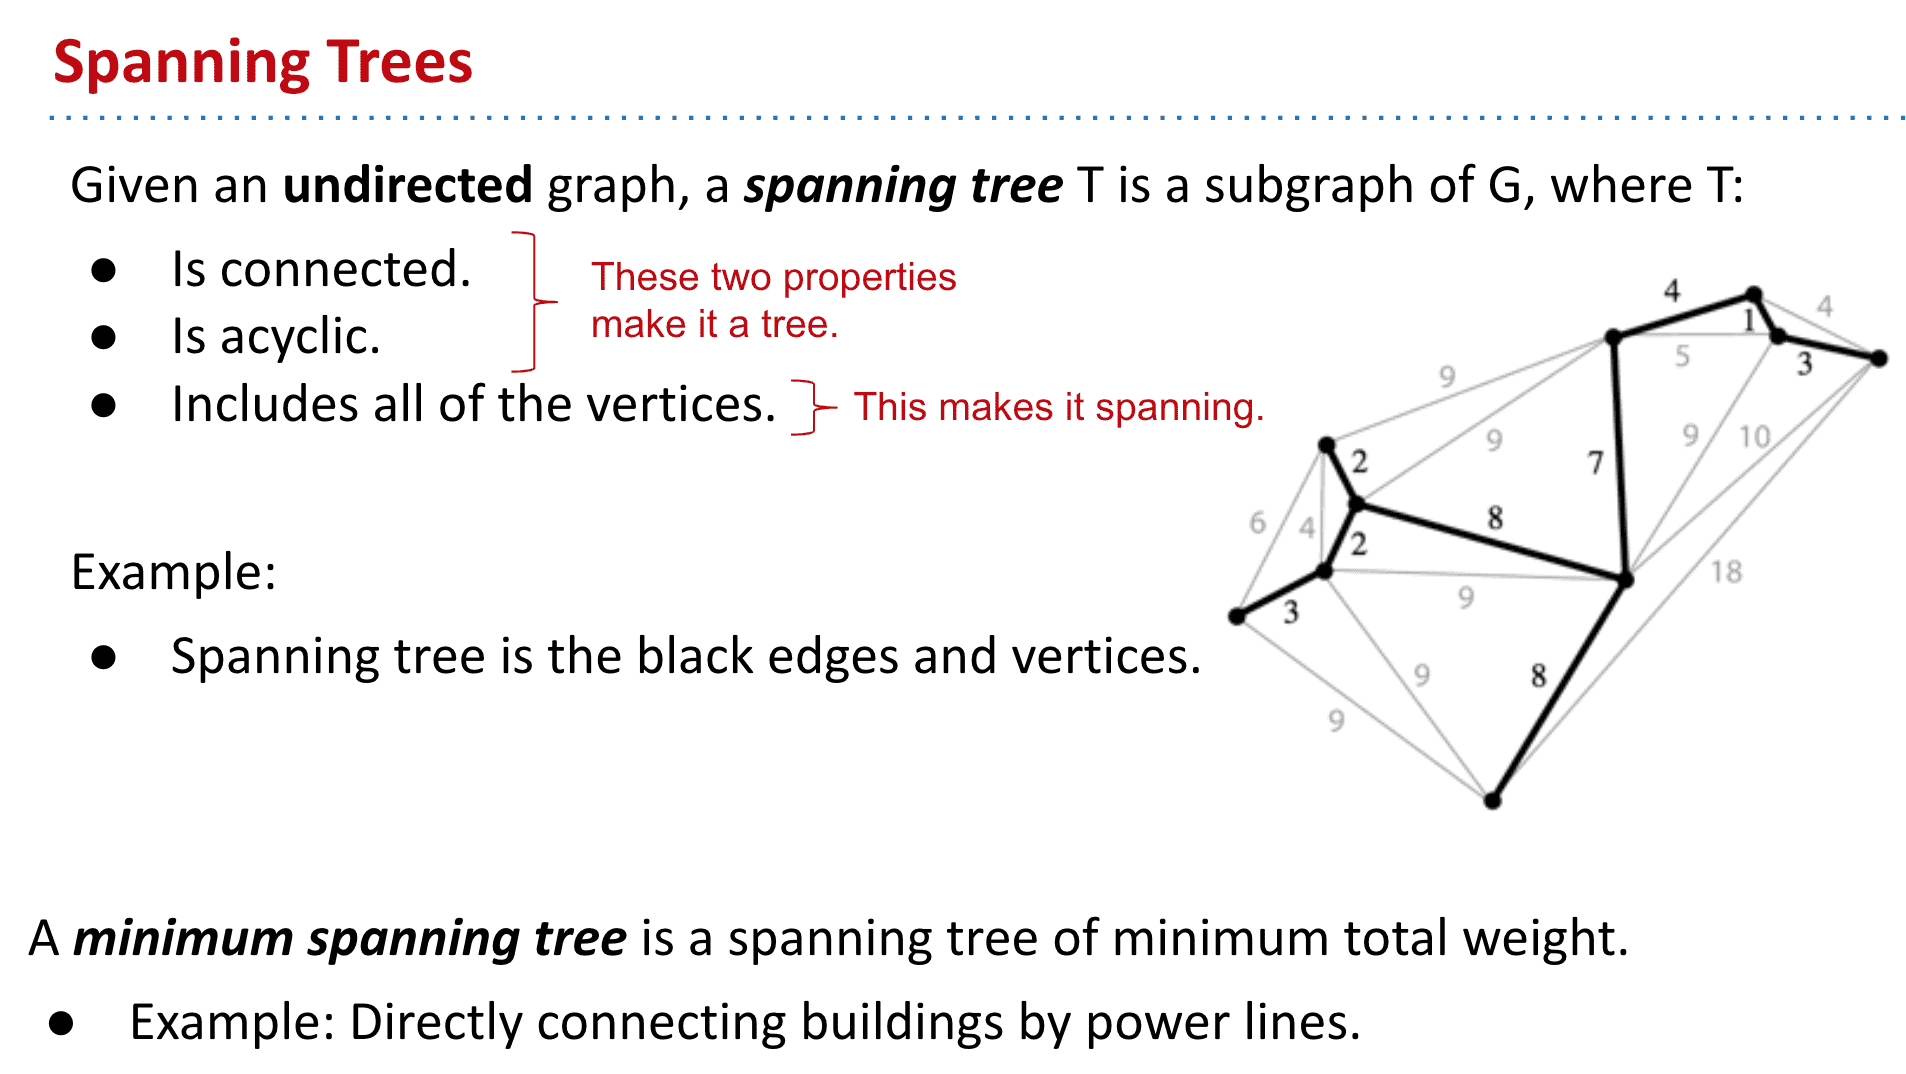 连接、不循环→tree、包含所有顶点→spanning